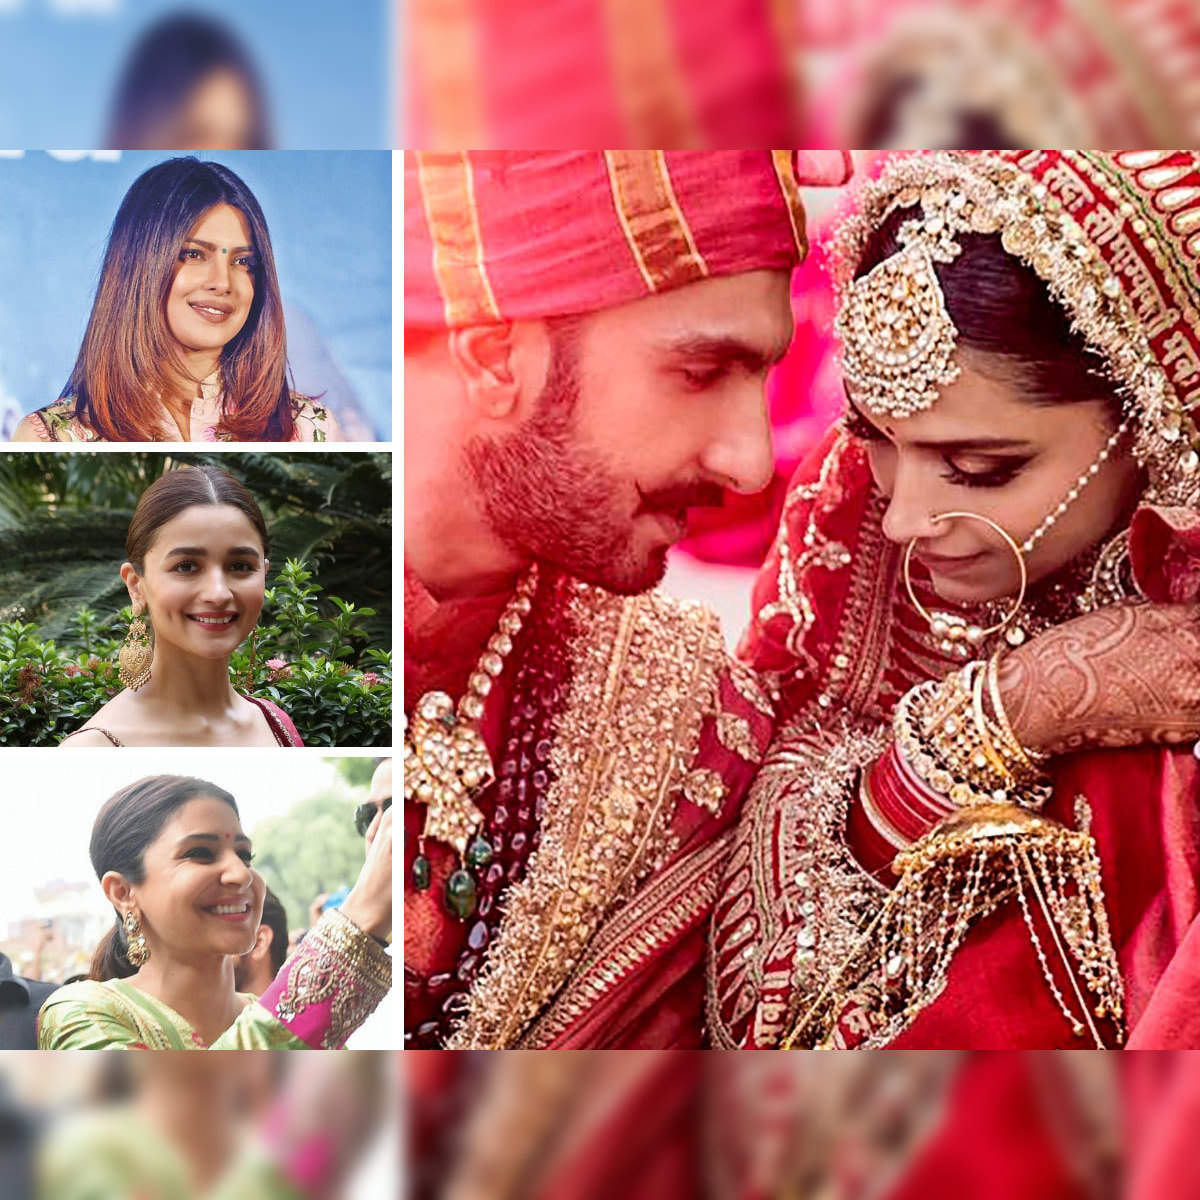 Deepika Padukone - Ranveer Singh Wedding Video Steal Hearts